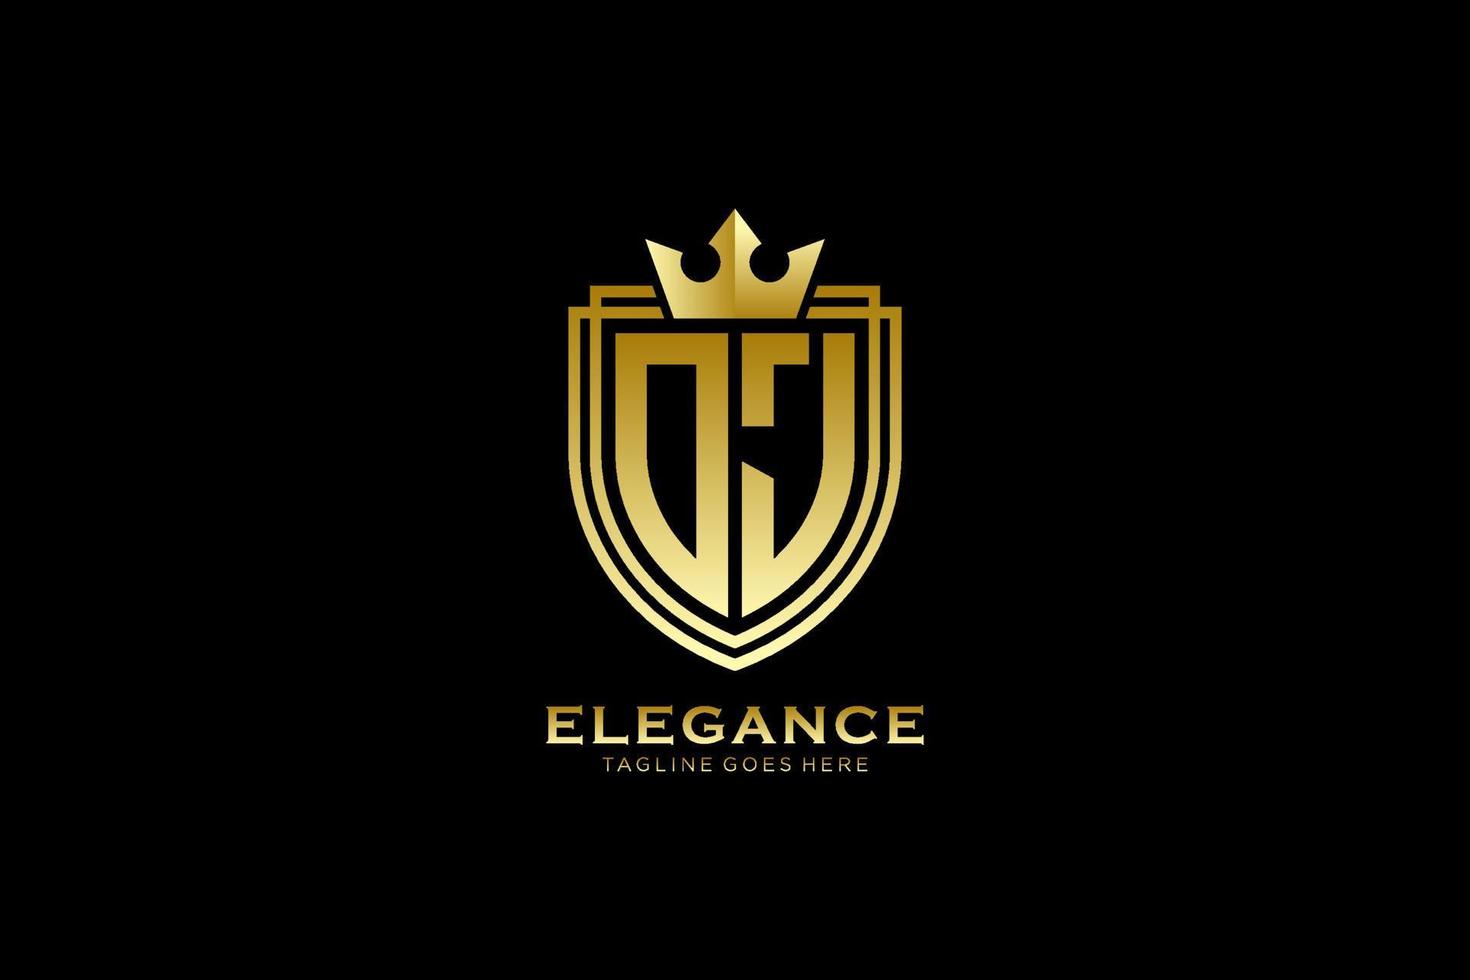 logo monogramme de luxe élégant initial oj ou modèle de badge avec volutes et couronne royale - parfait pour les projets de marque de luxe vecteur